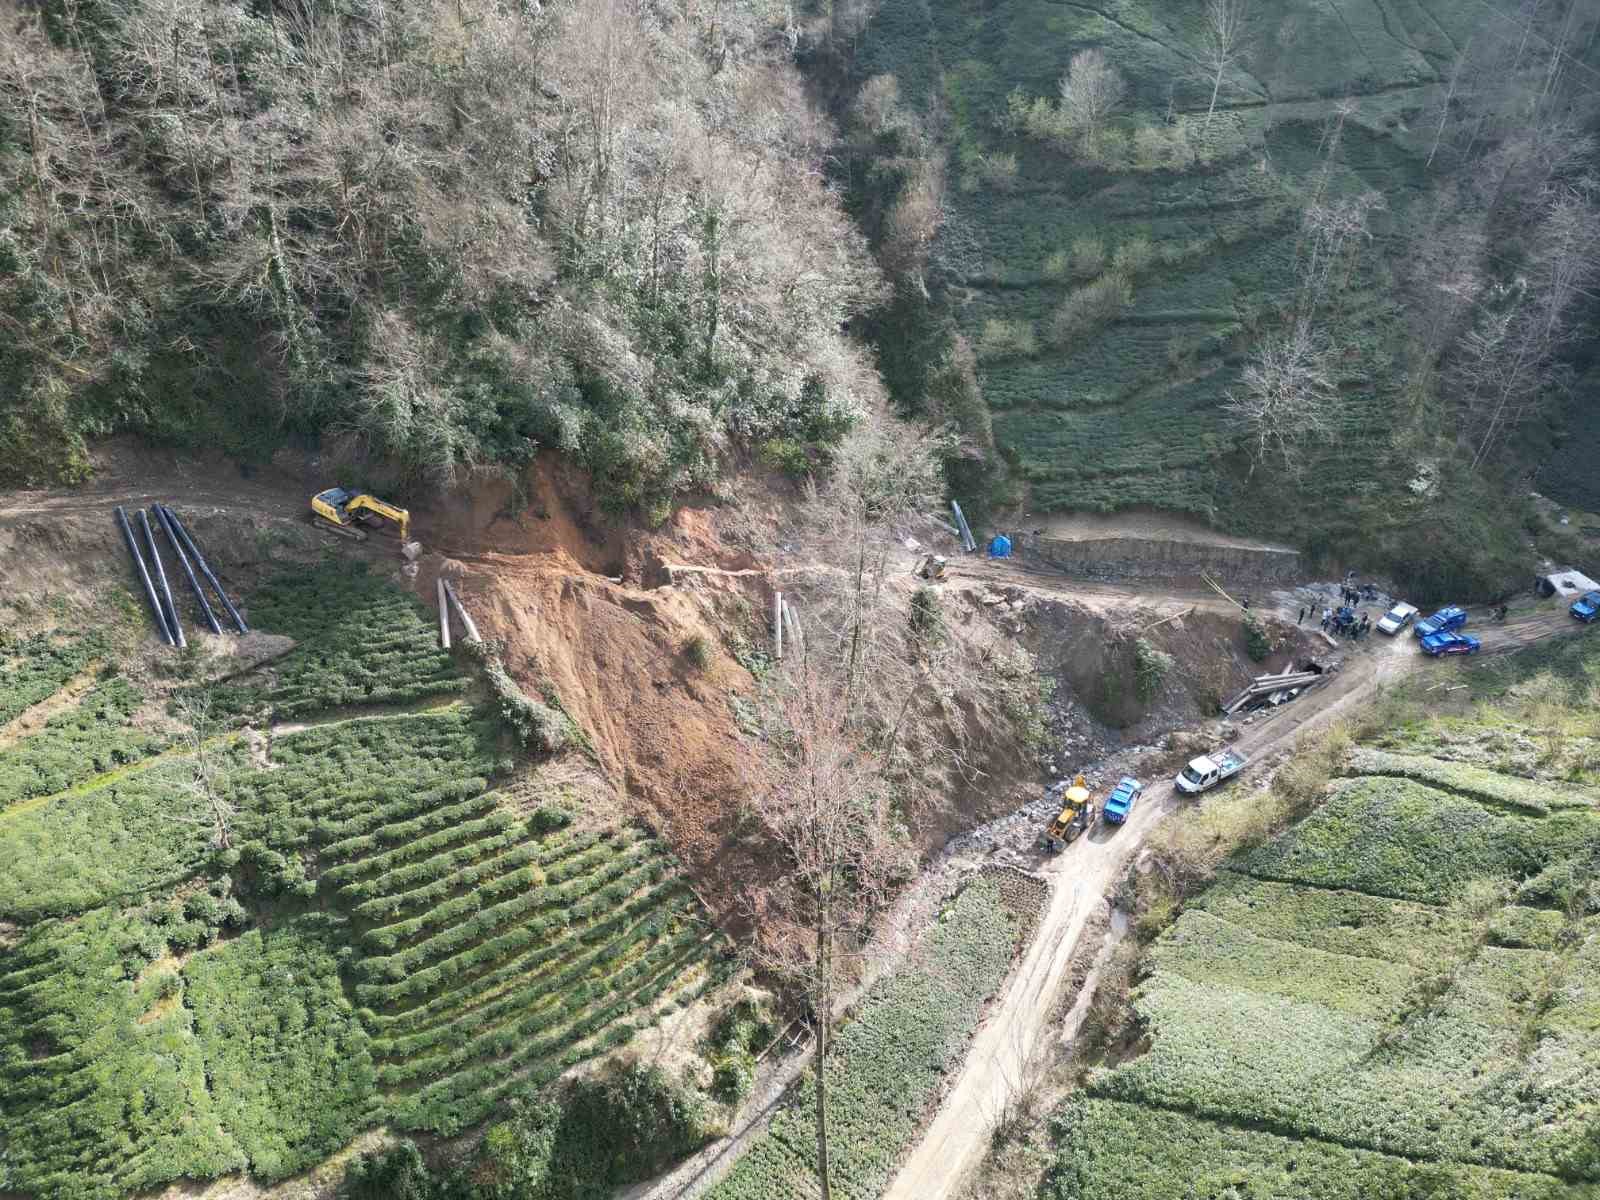 Trabzon’da 3 işçiye mezar olan ishale hattı sahası havadan görüntülendi
